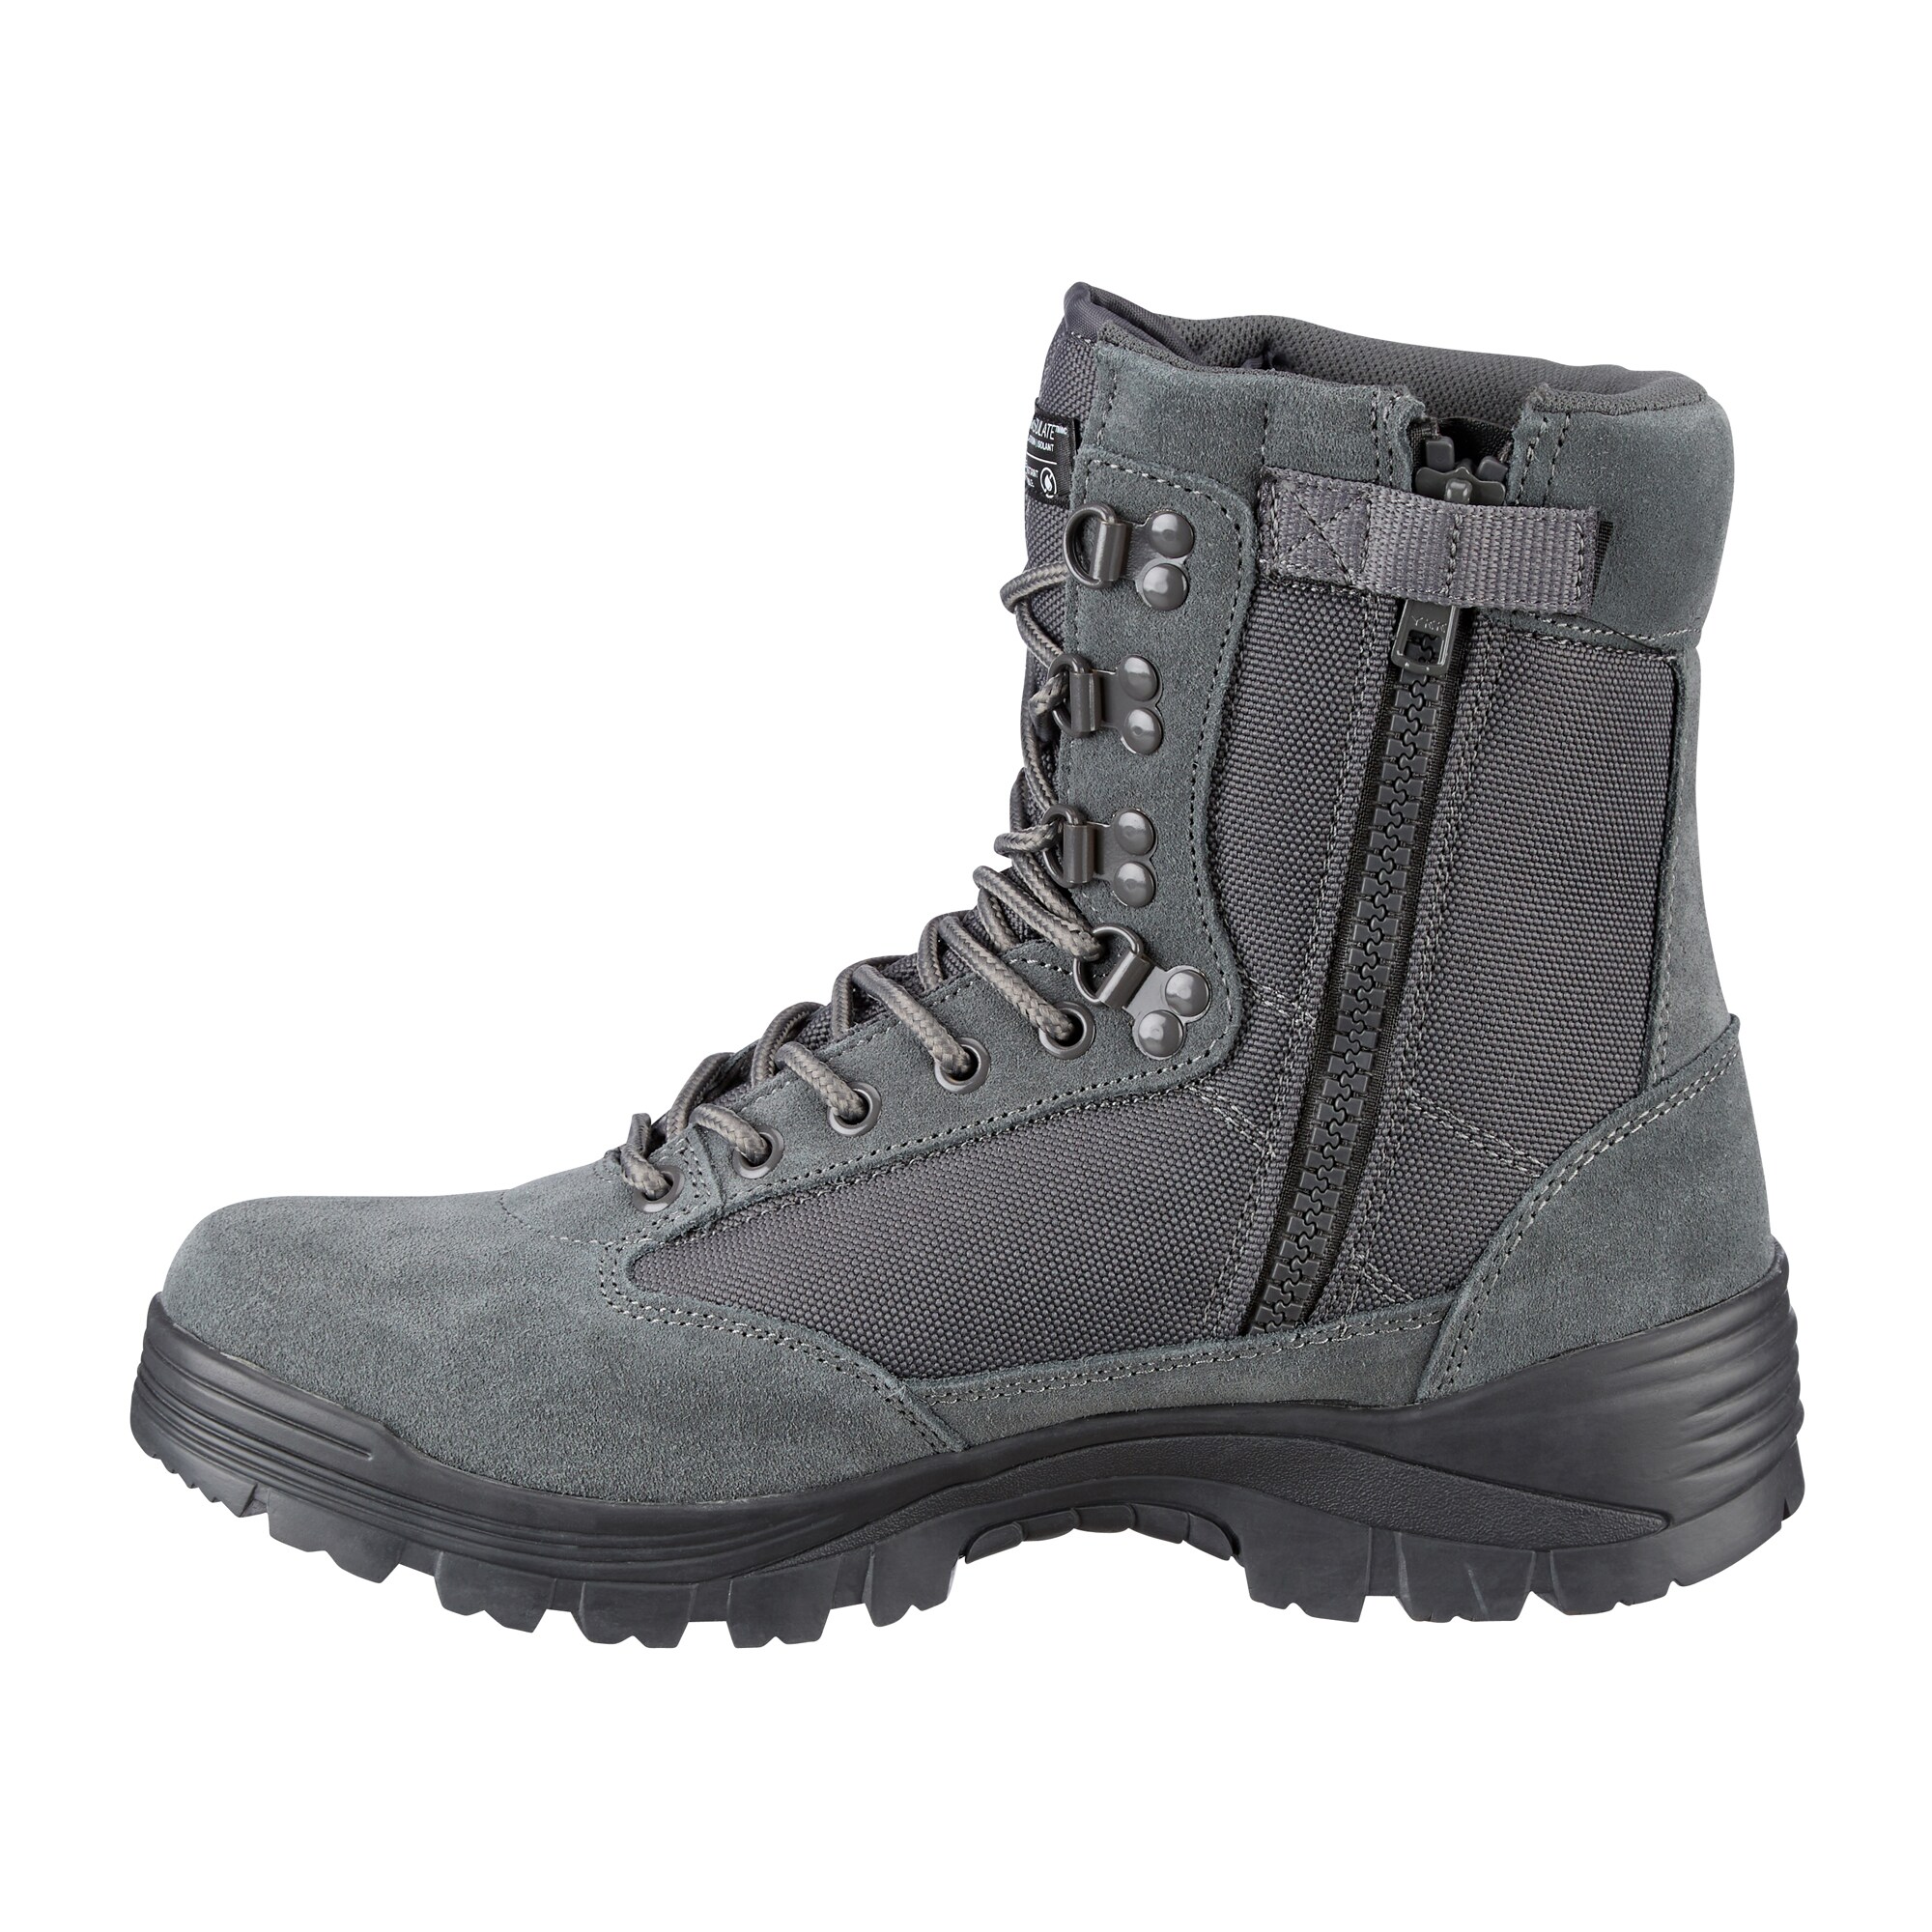 Tactical Boot urban gray | Tactical Boot urban gray | Combat Boots ...